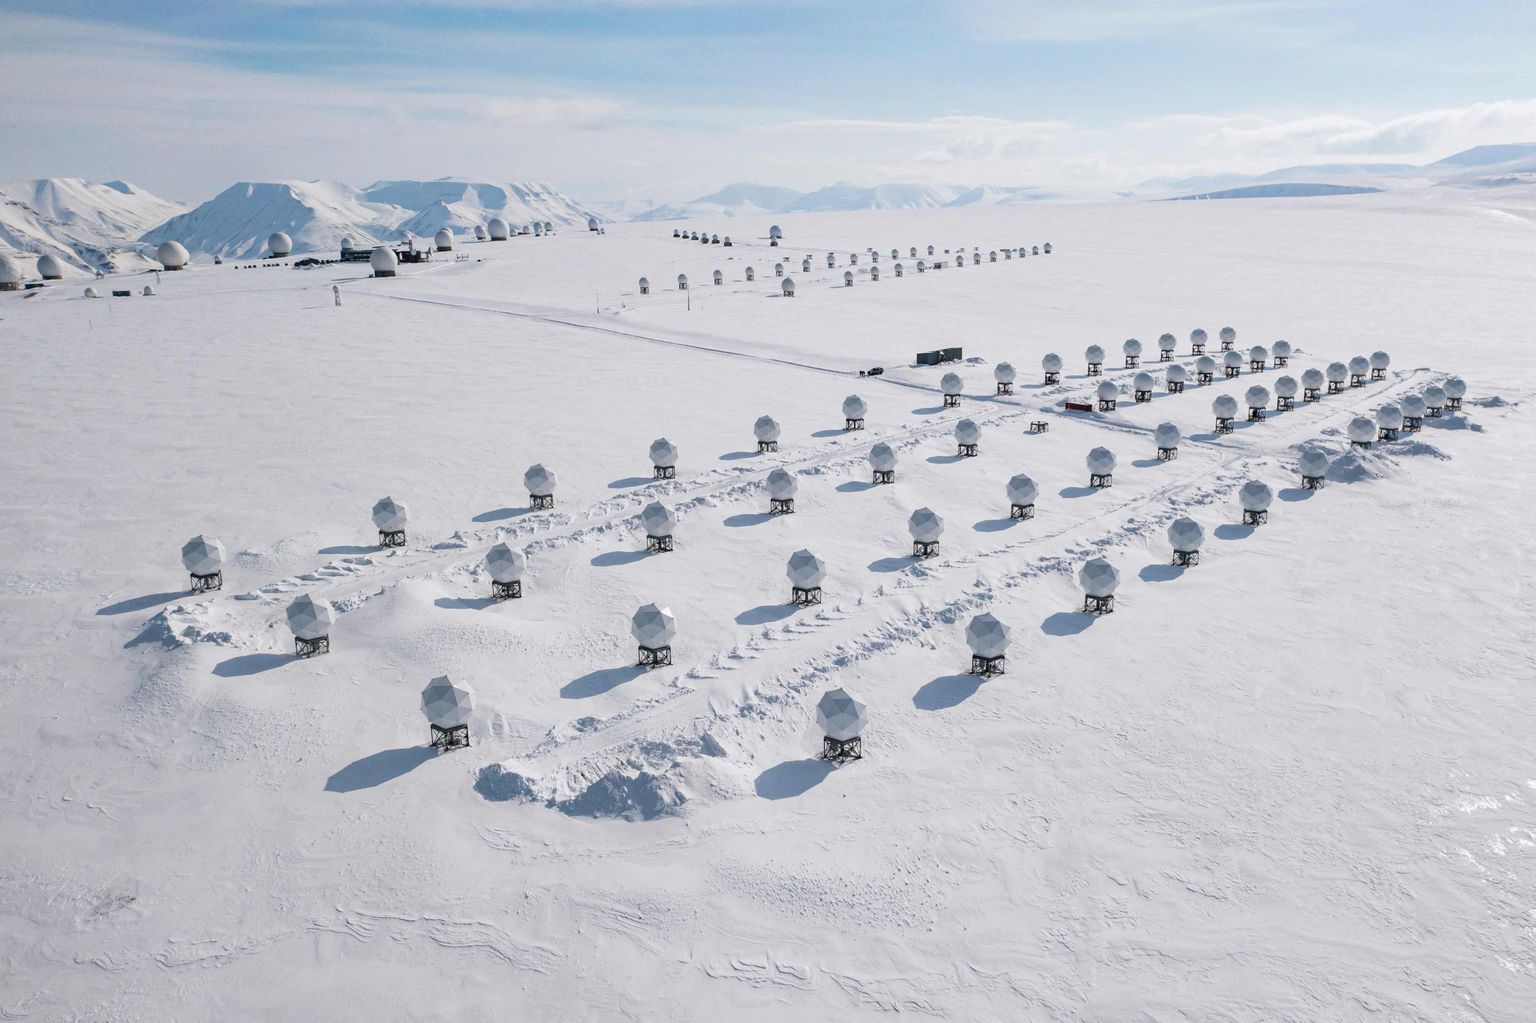 Õhuvõte telekommunikatsioonikuplitest KSAT, mis paiknevad Teravmägede pealinna Longyearbyeni lähistel.